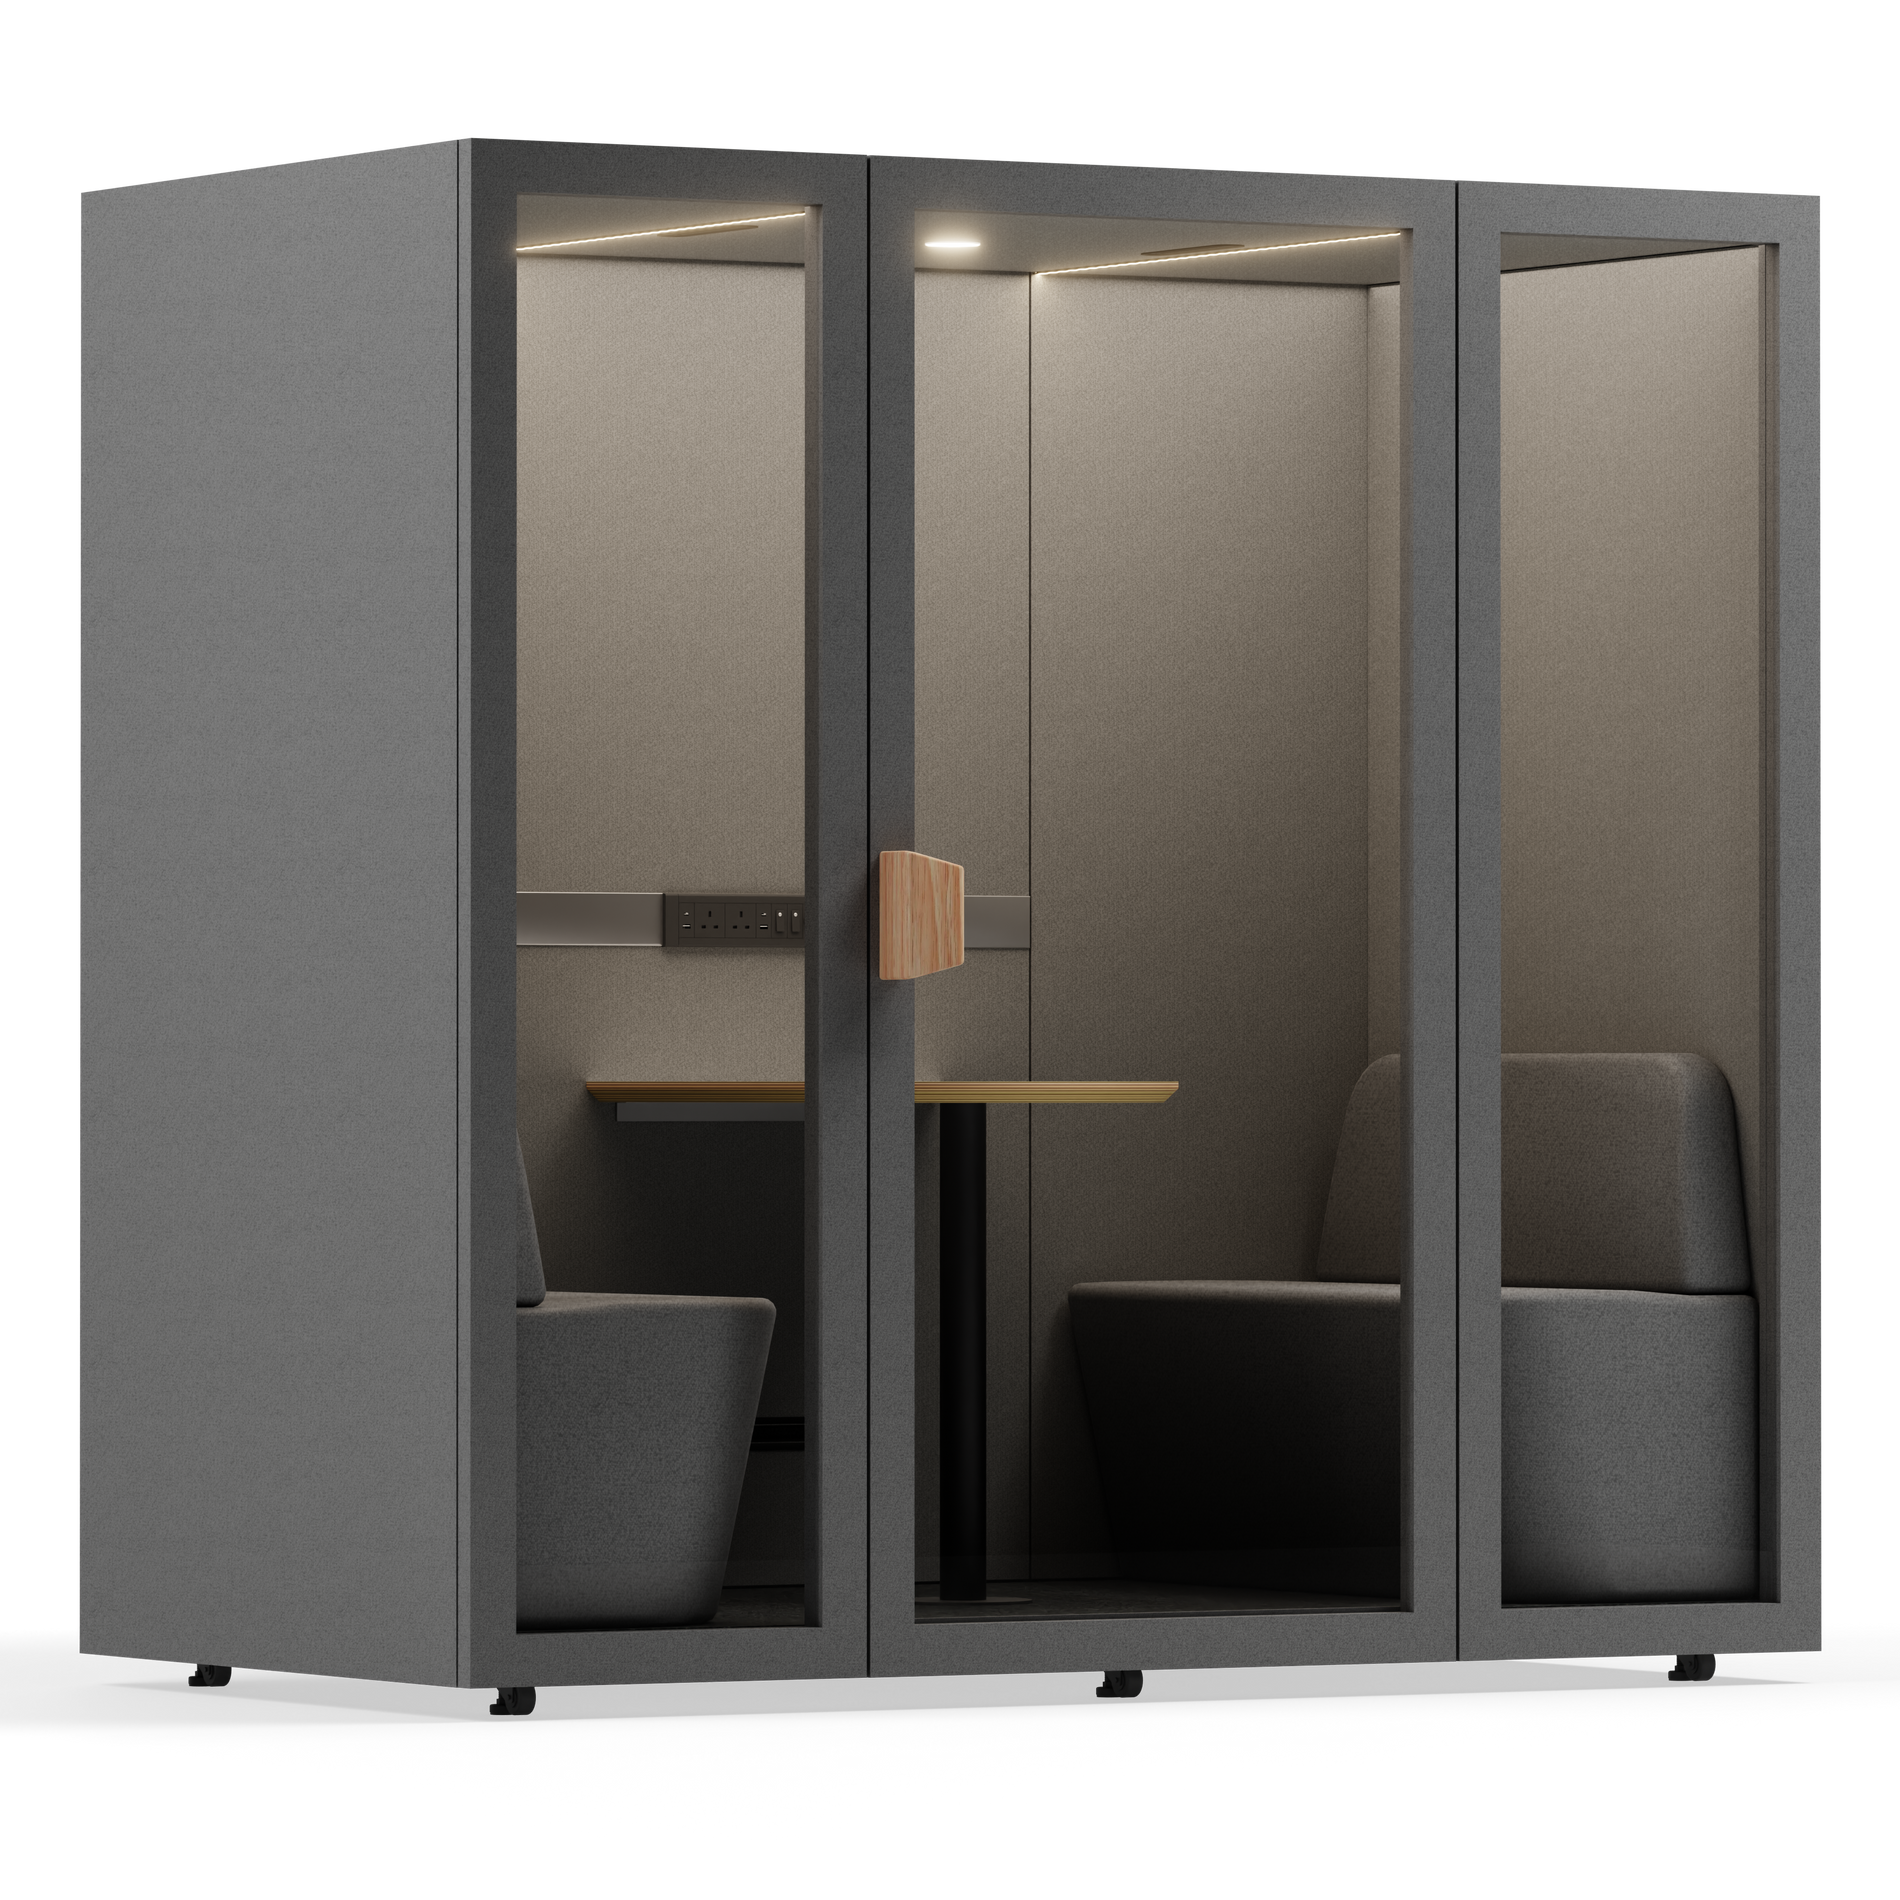 Kabina konferencyjna Folio dla 2 do 4 osóbFolio Dark Grey / Furniture As Per Images